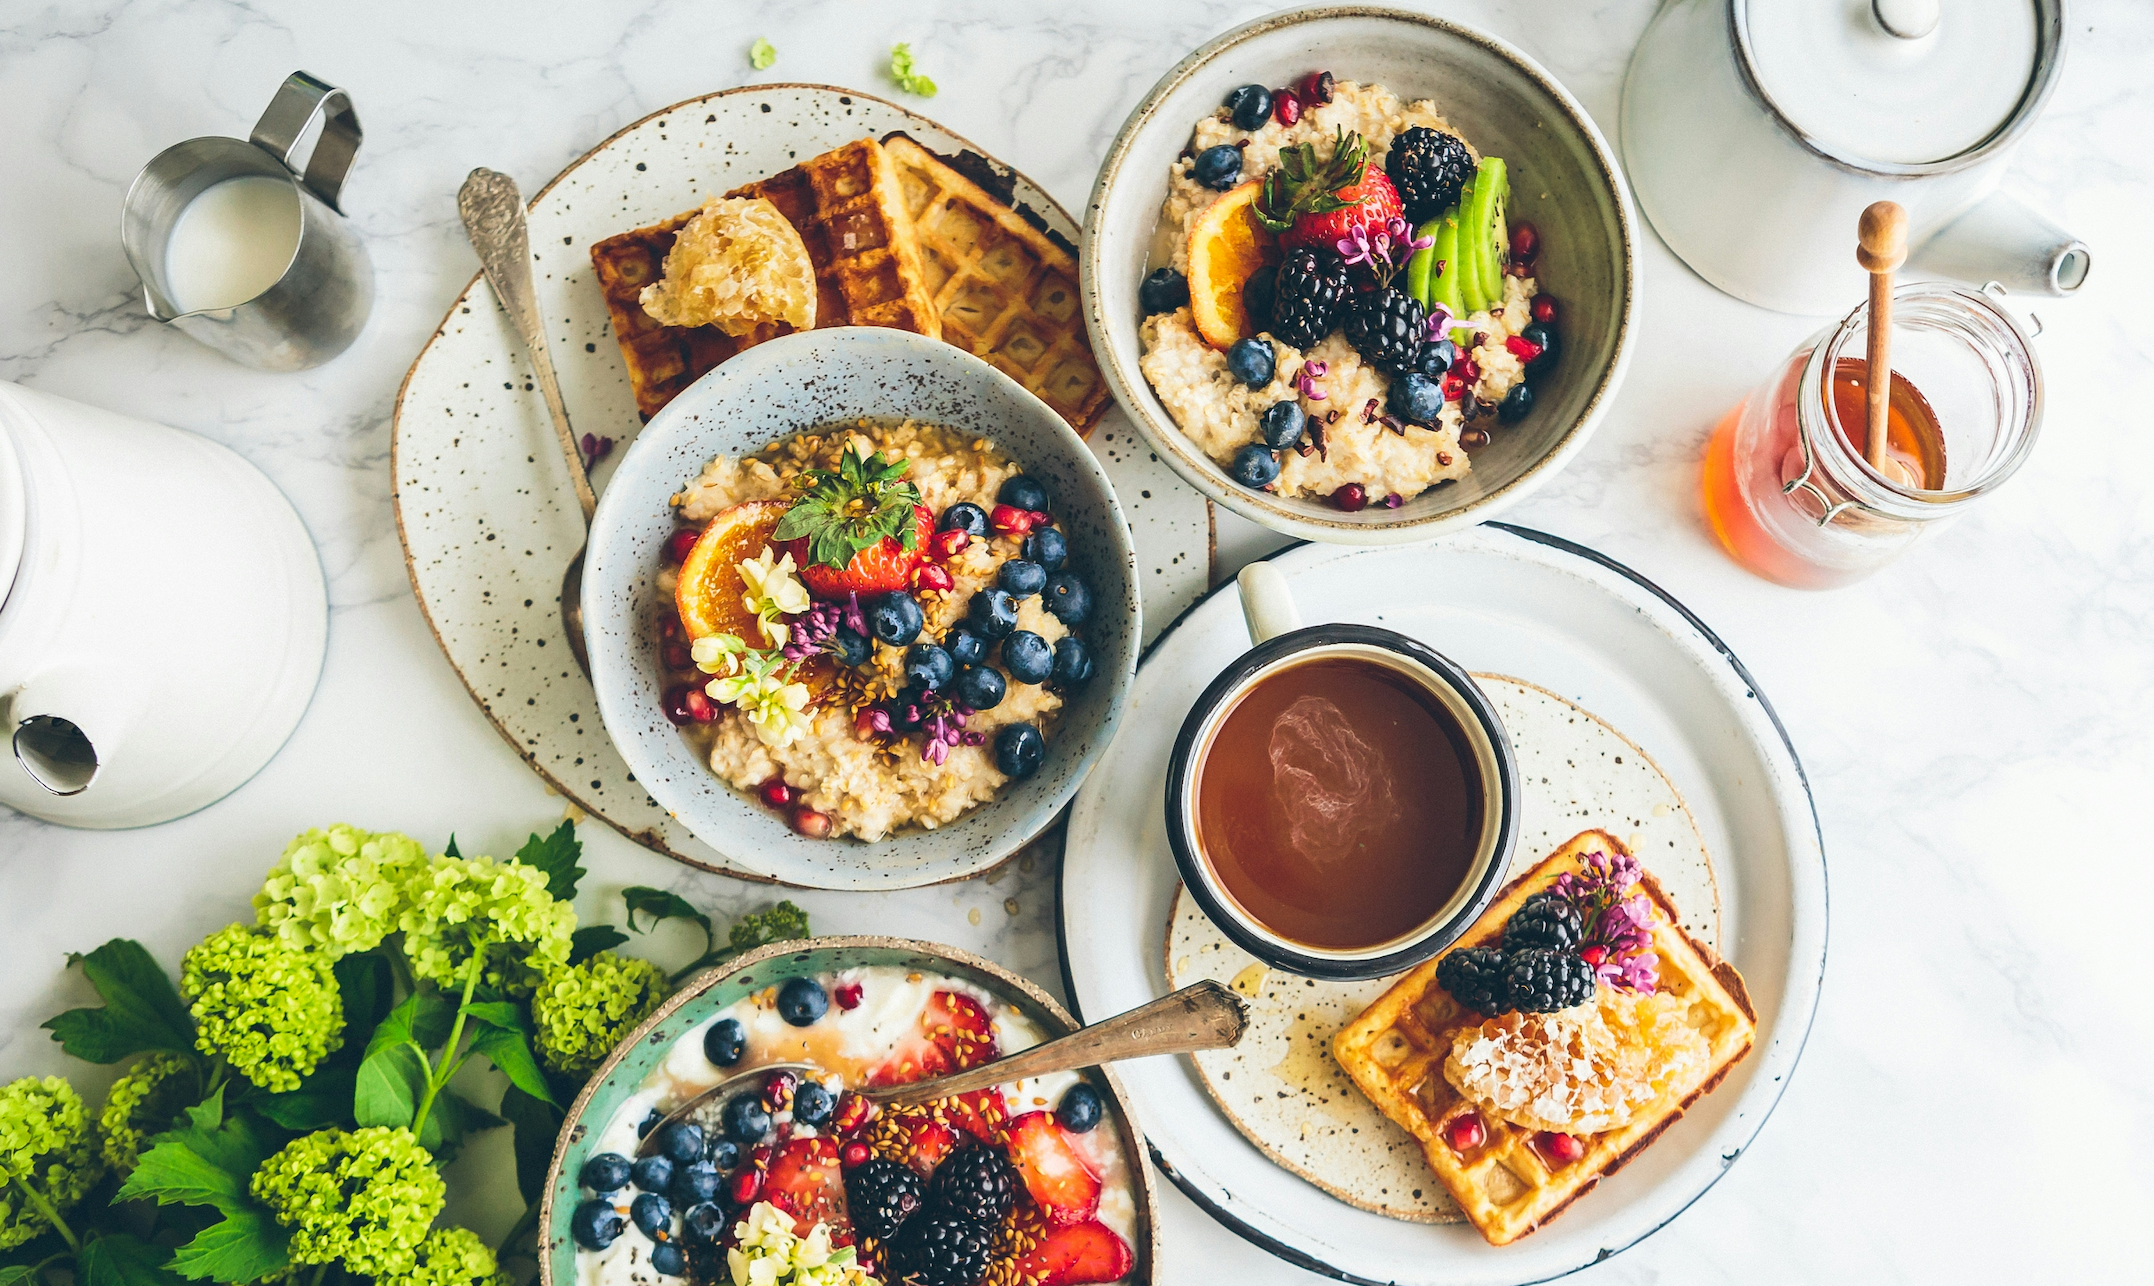 10 Gut-Friendly Breakfast Ideas